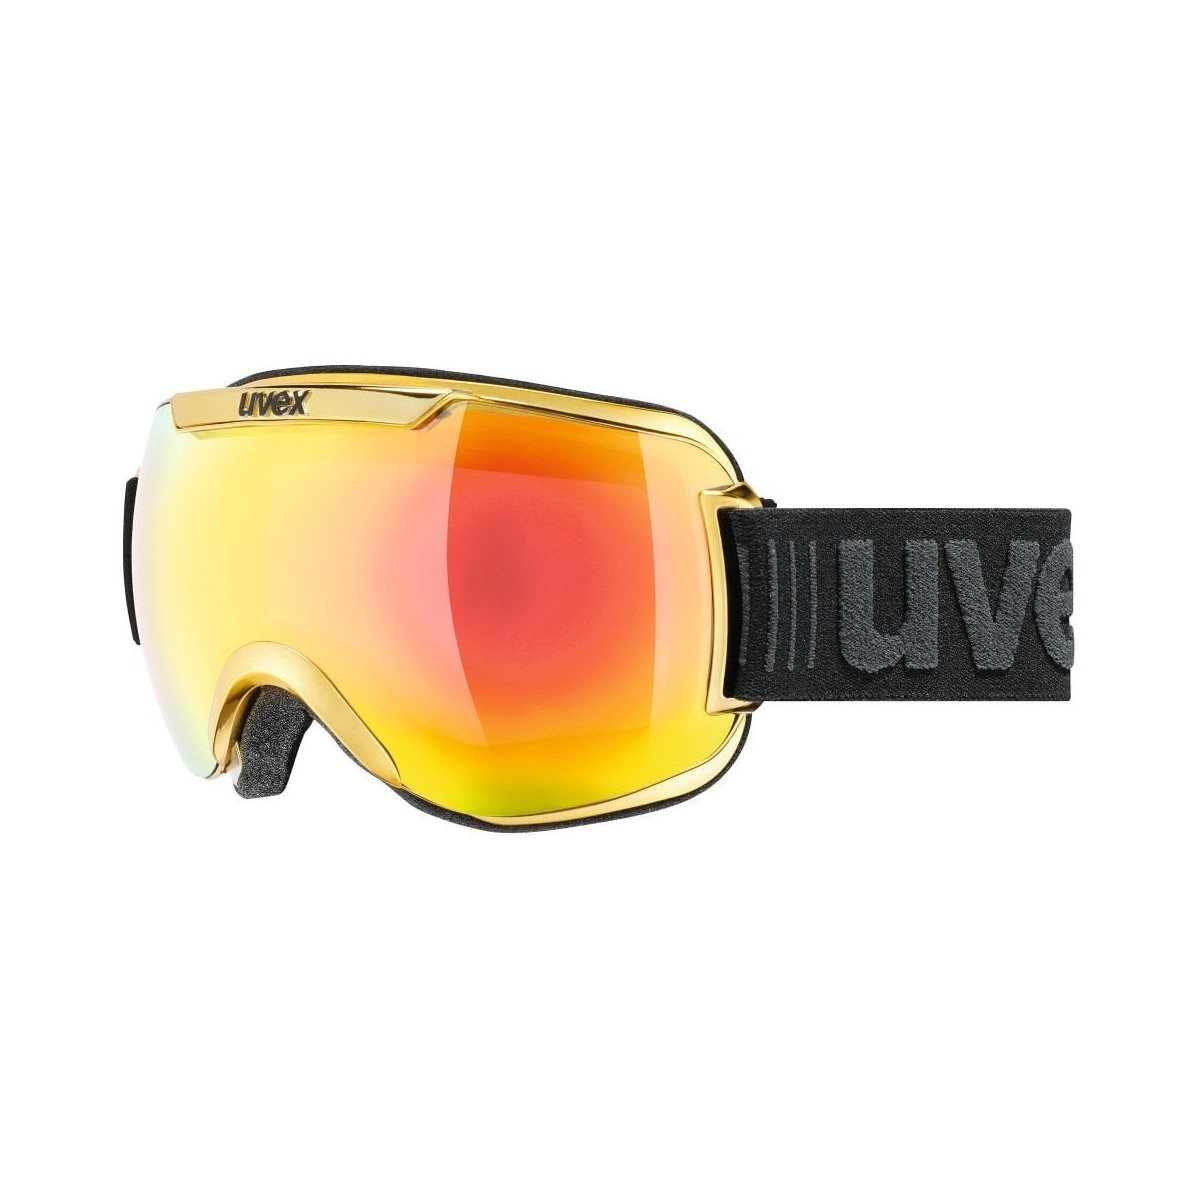 UVEX slēpošanas brilles DOWNHILL 2000 zelta